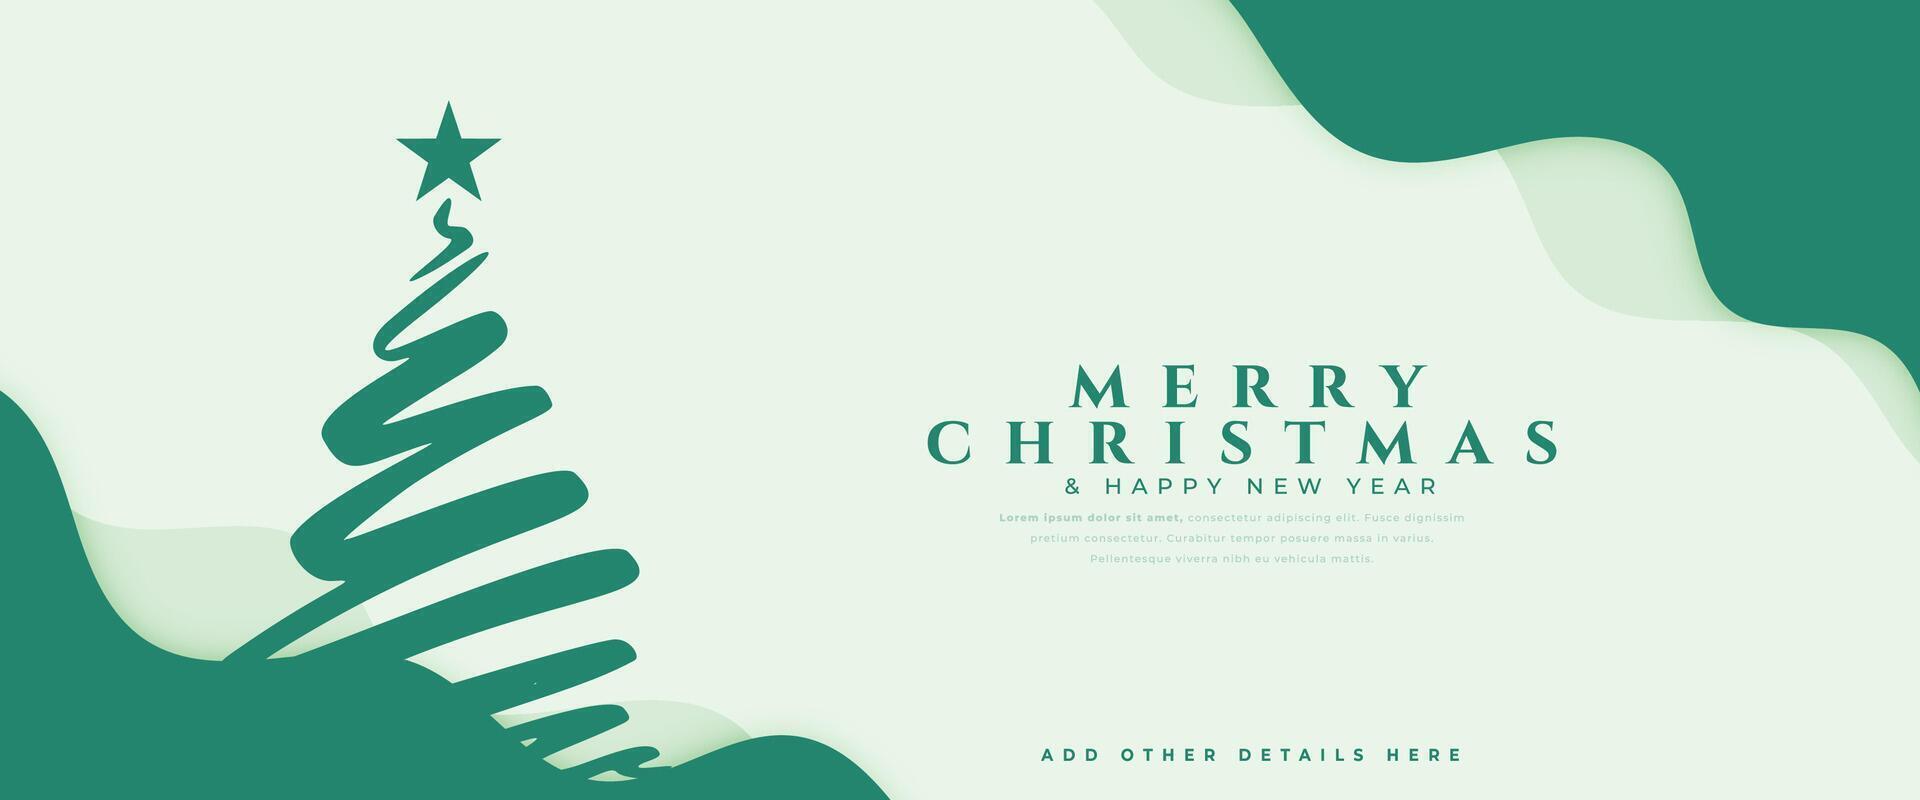 dekorativ fröhlich Weihnachten und Neu Jahr Vorabend Party Einladung Banner Design vektor